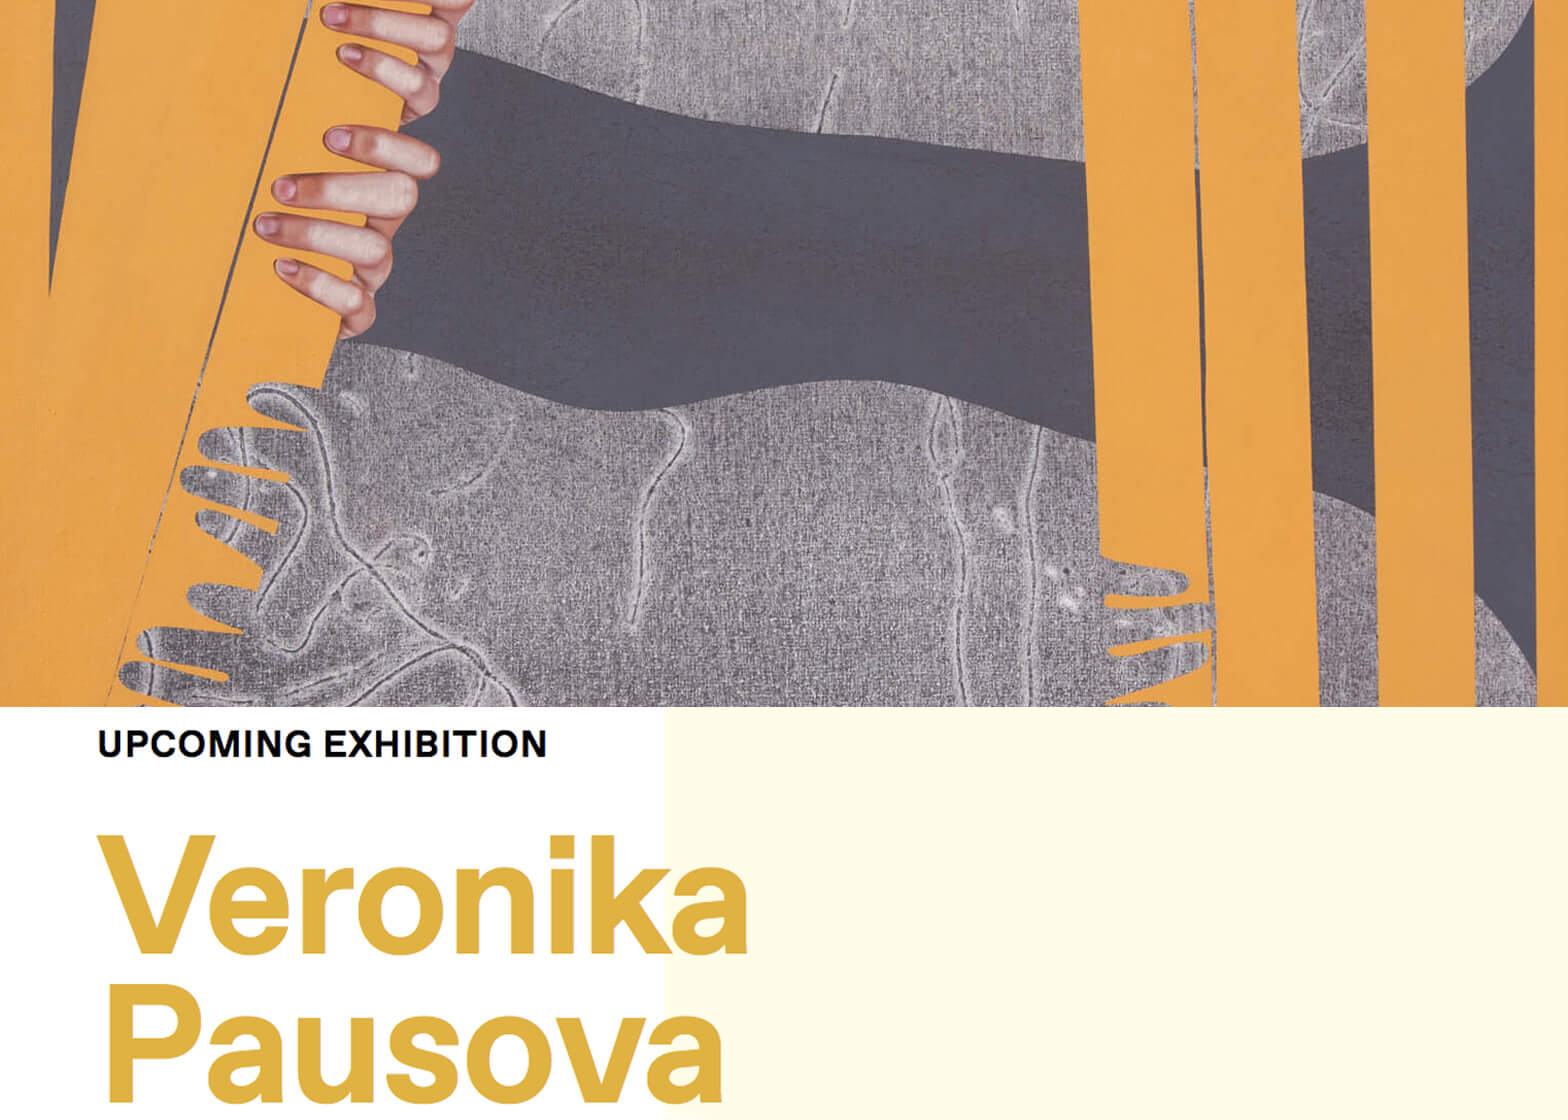 Veronika Pausova’s solo exhibition at the Esker Foundation